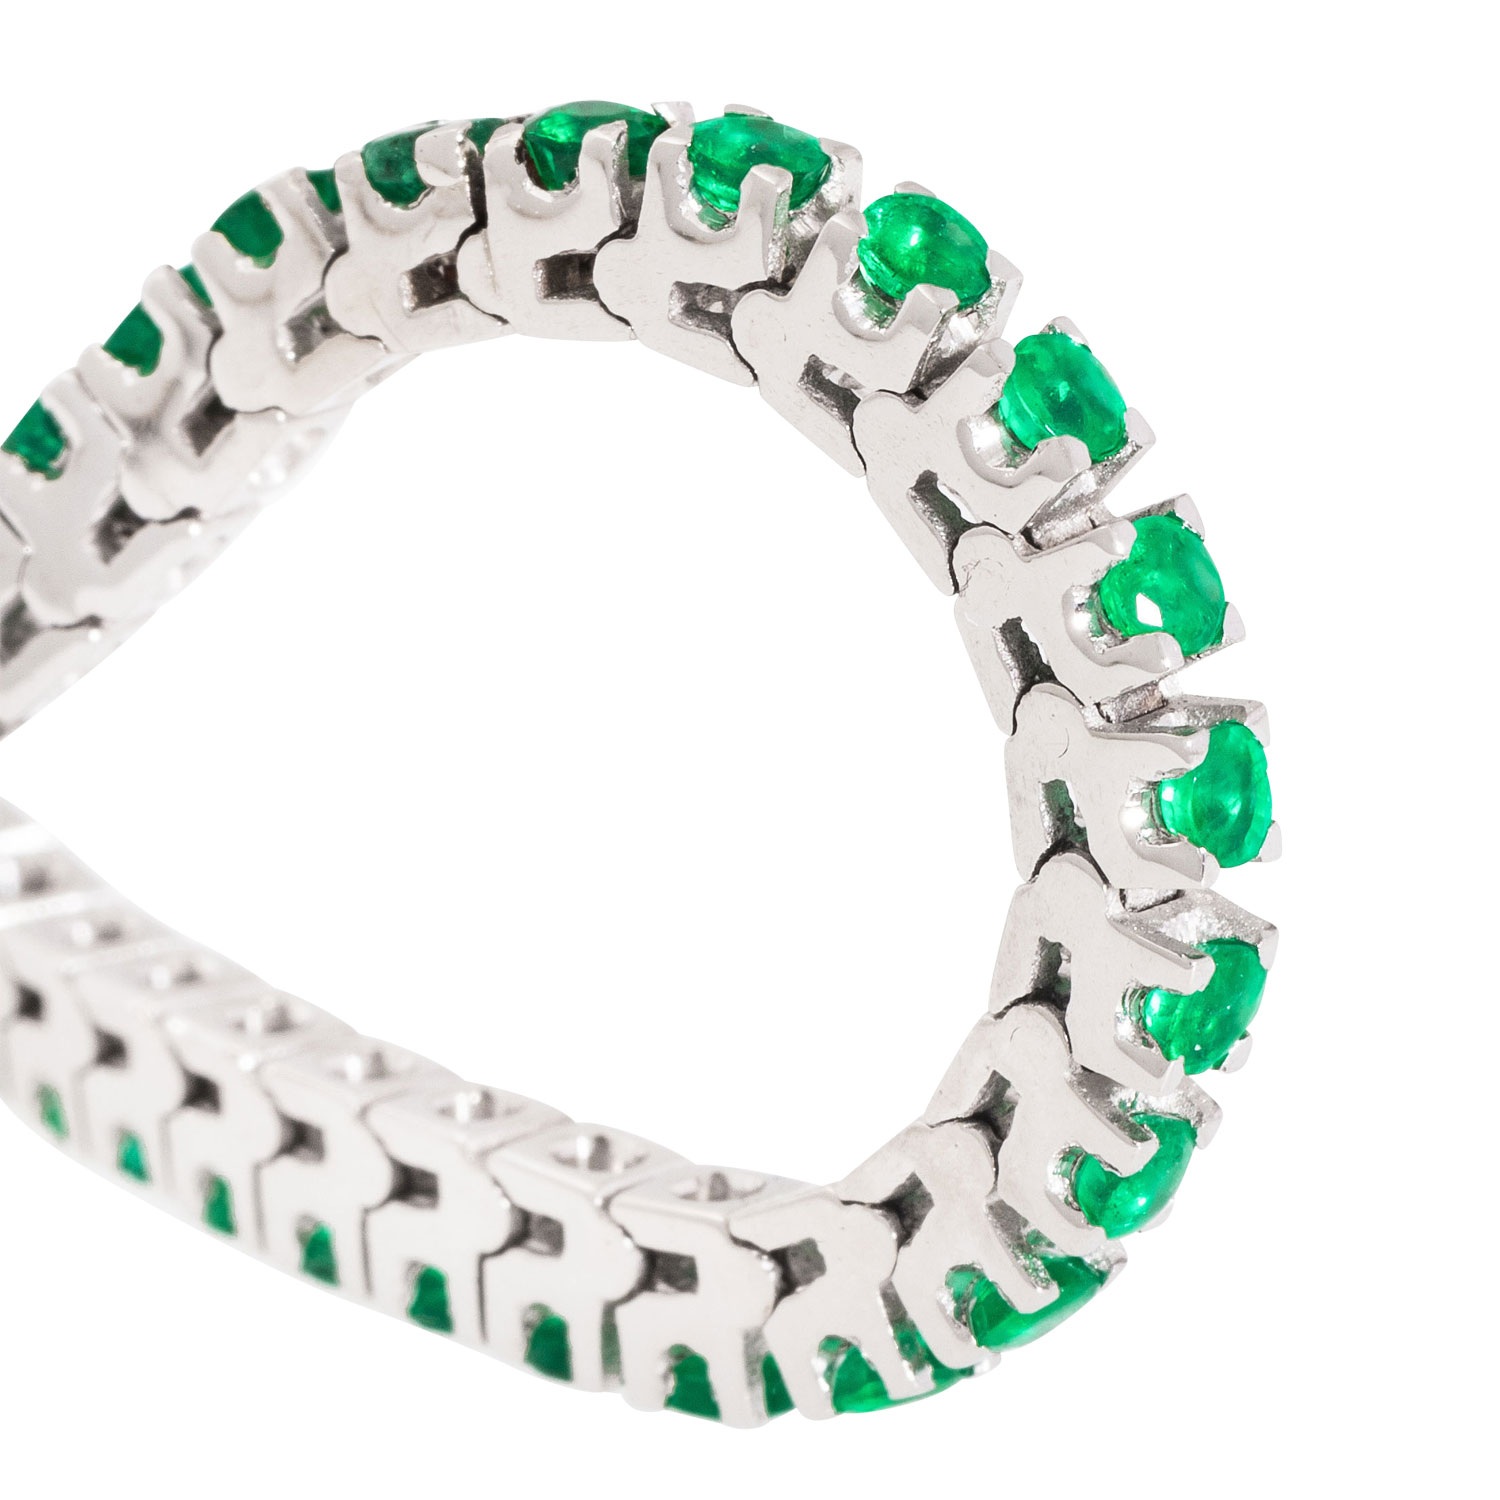 Armband mit zahlreichen kleinen Smaragden, - Image 5 of 5